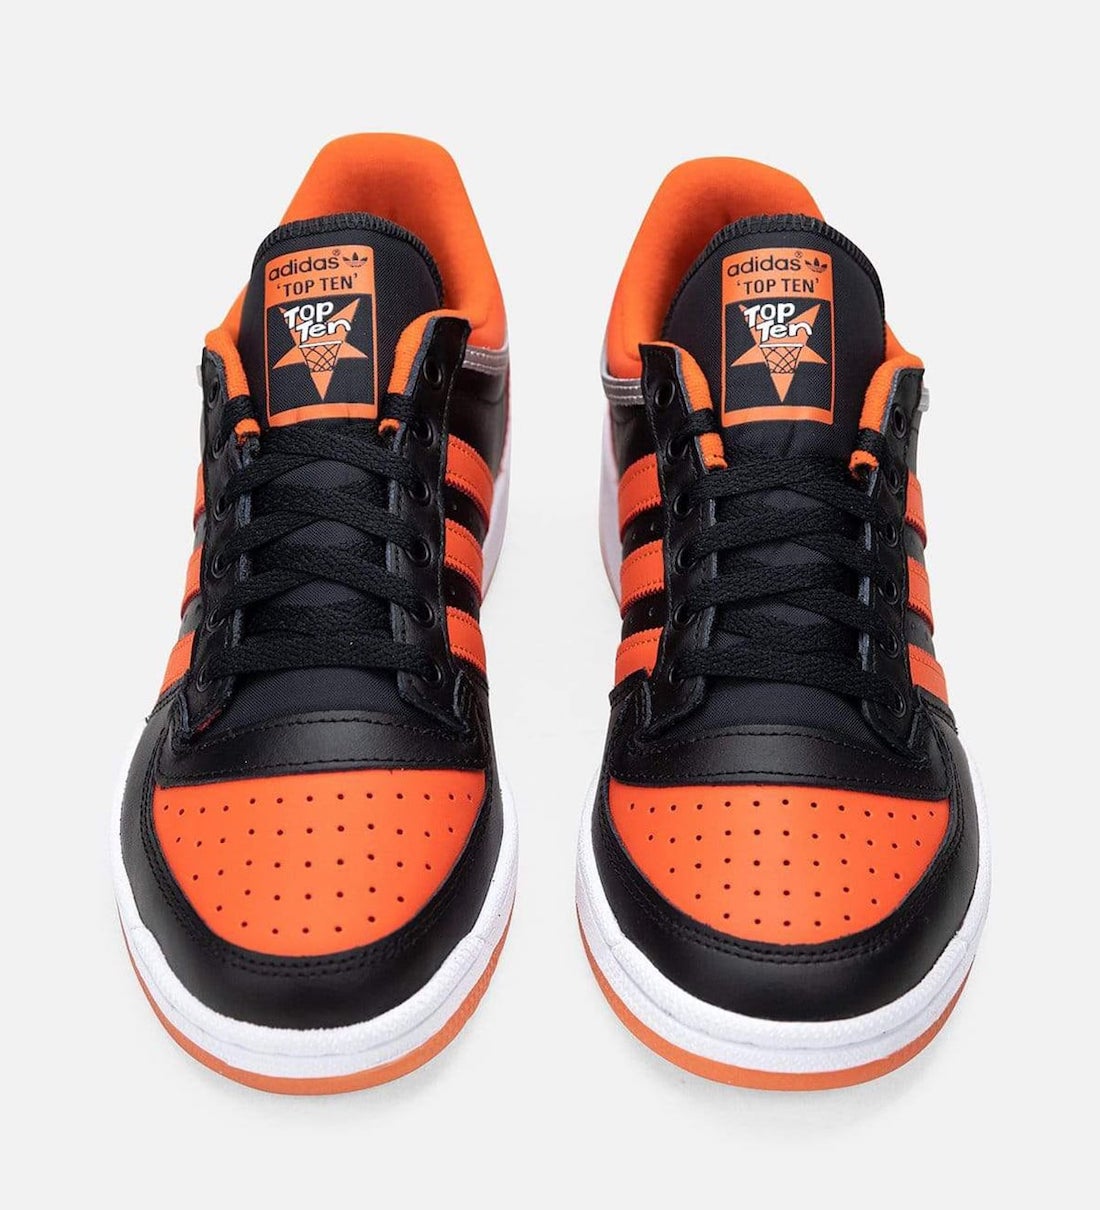 adidas Top Ten Black Orange FY3531 Release Date Info